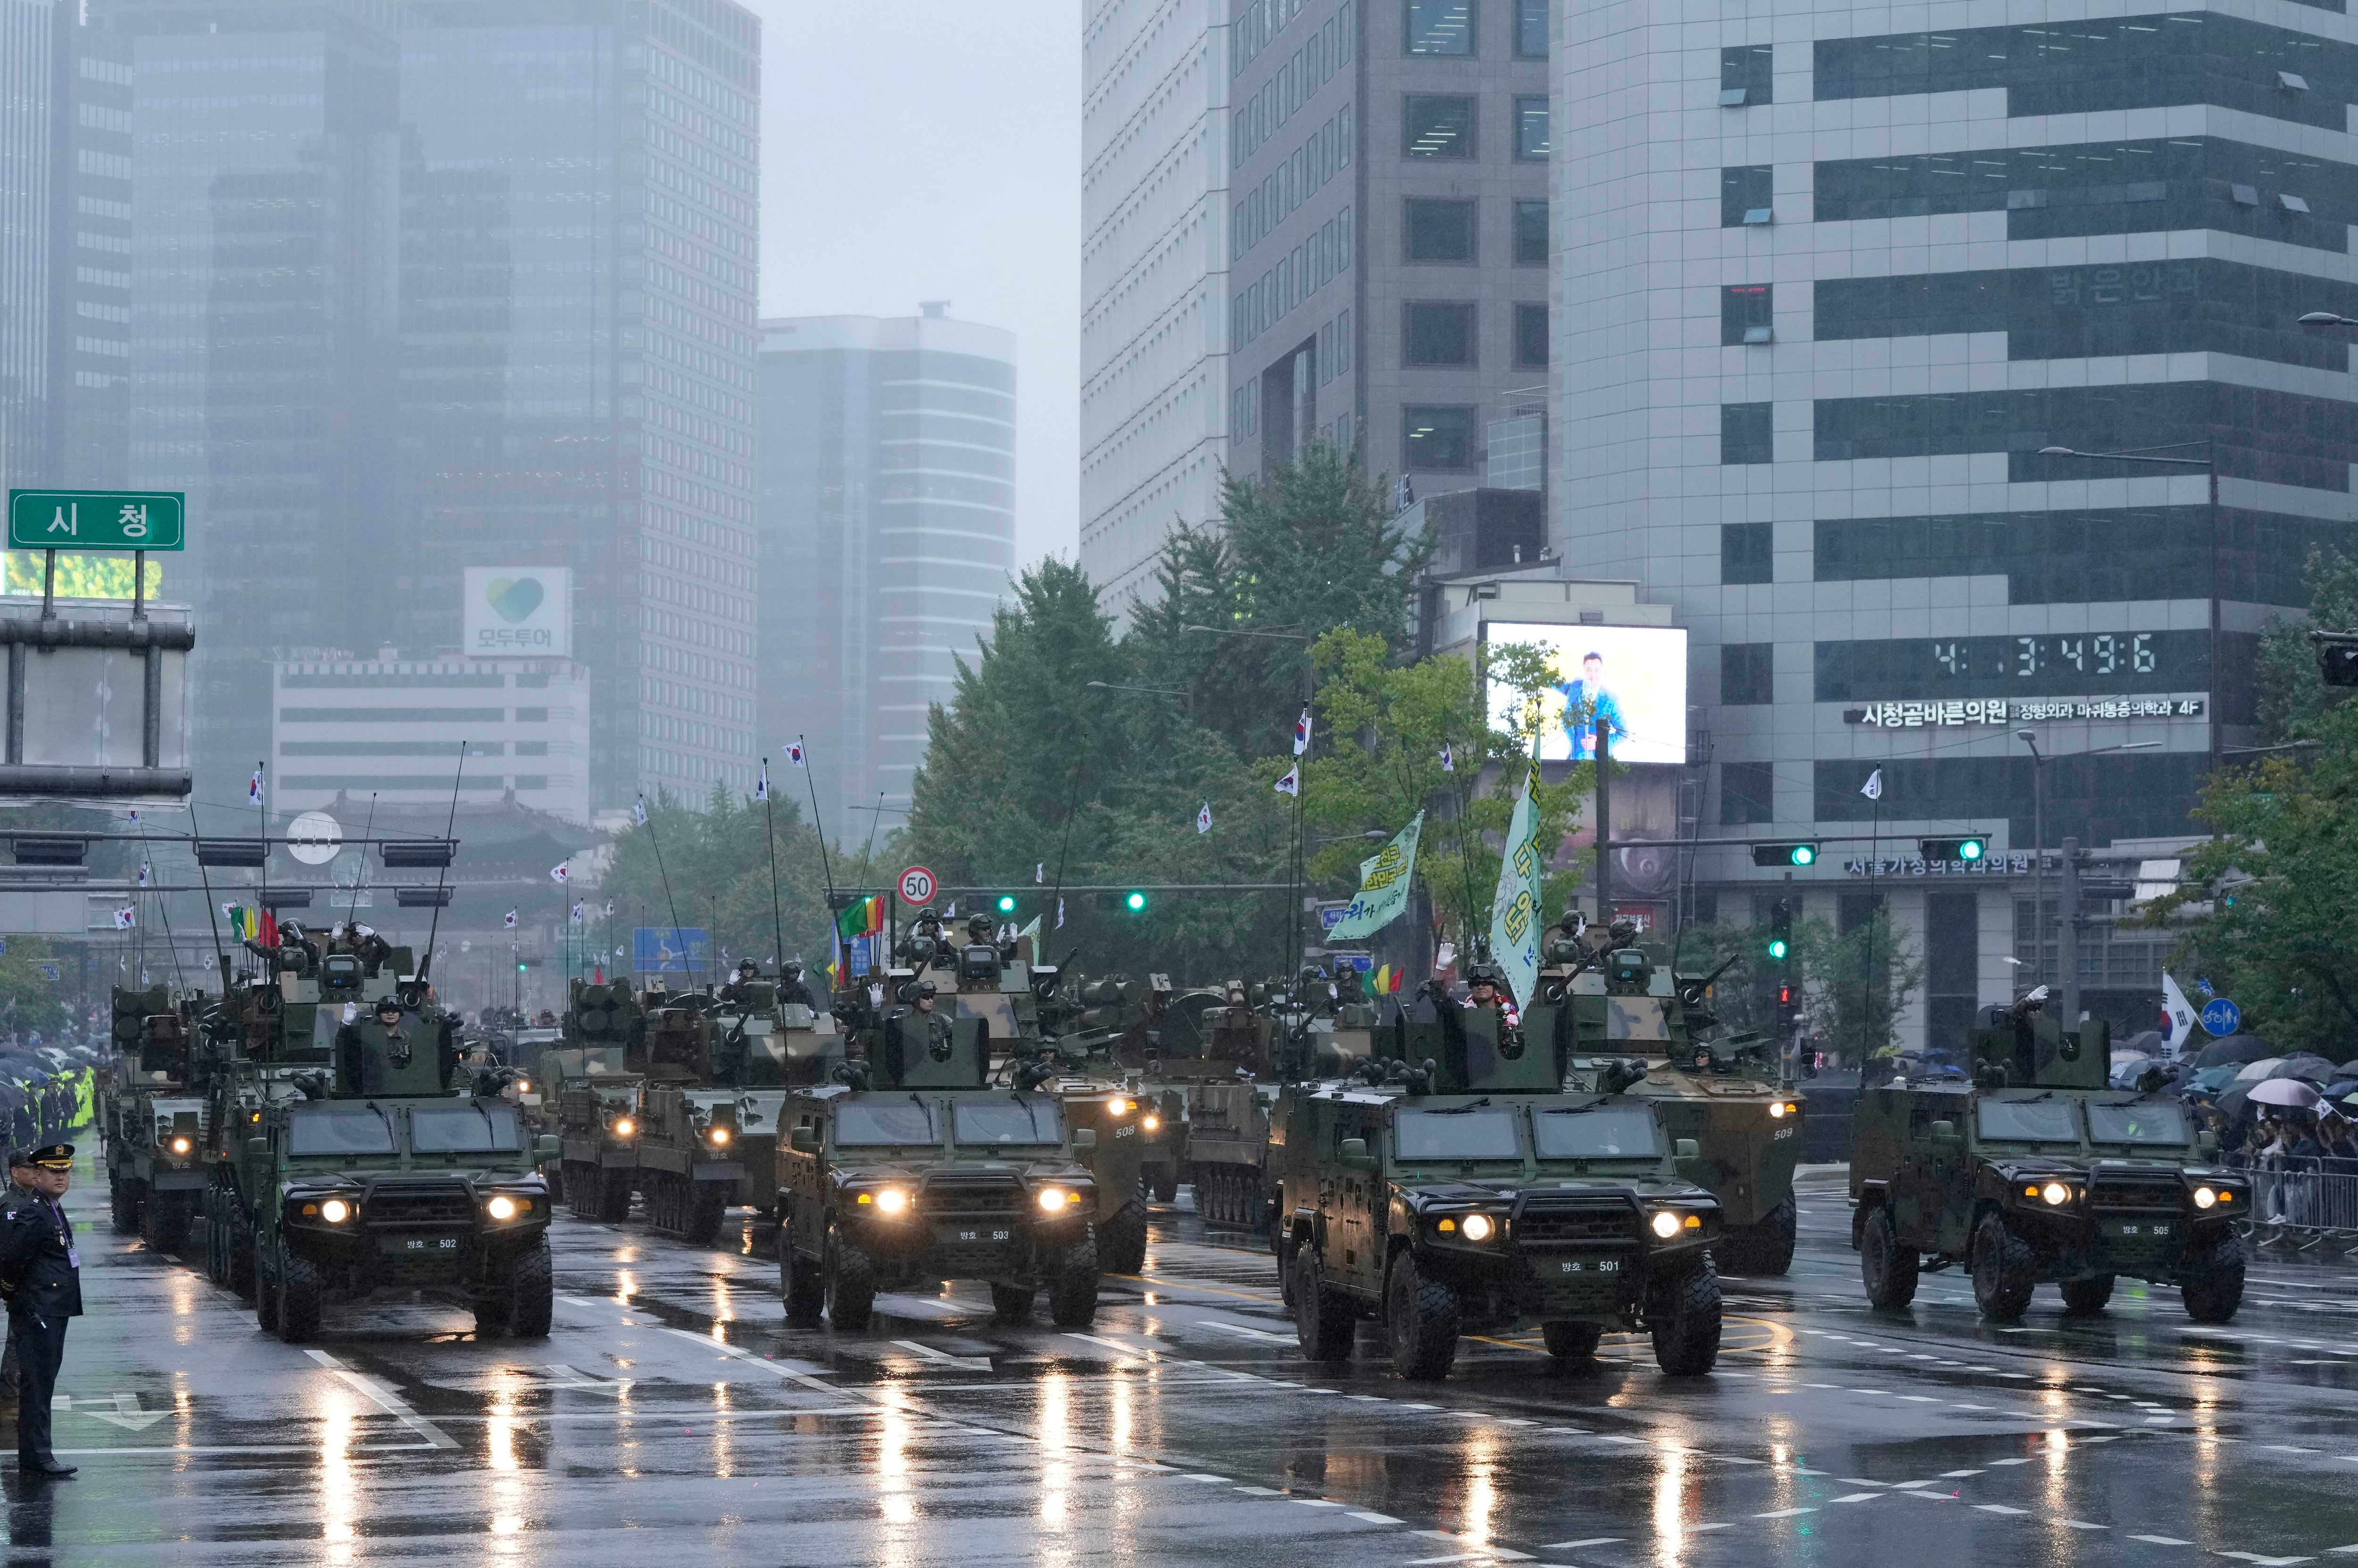 Los vehículos blindados también desfilaron (AP Photo/Ahn Young-joon)